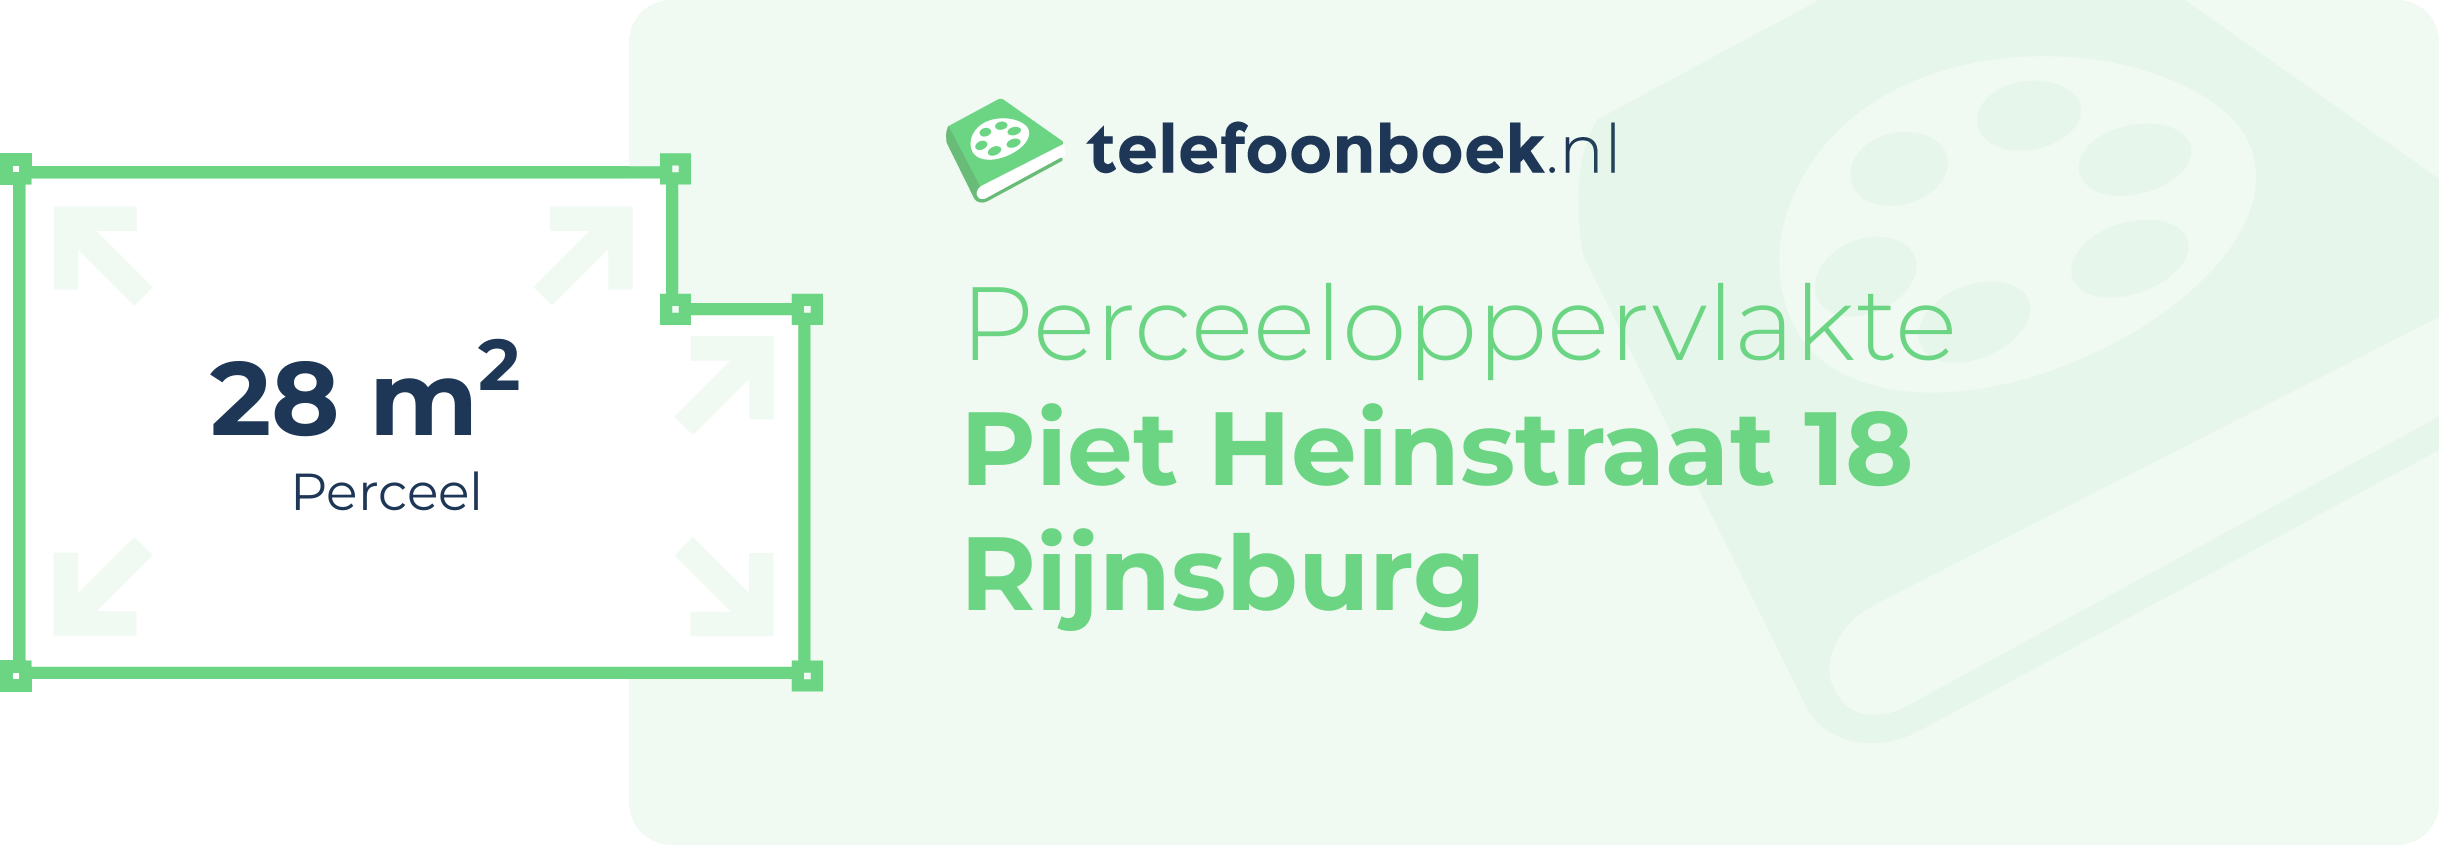 Perceeloppervlakte Piet Heinstraat 18 Rijnsburg